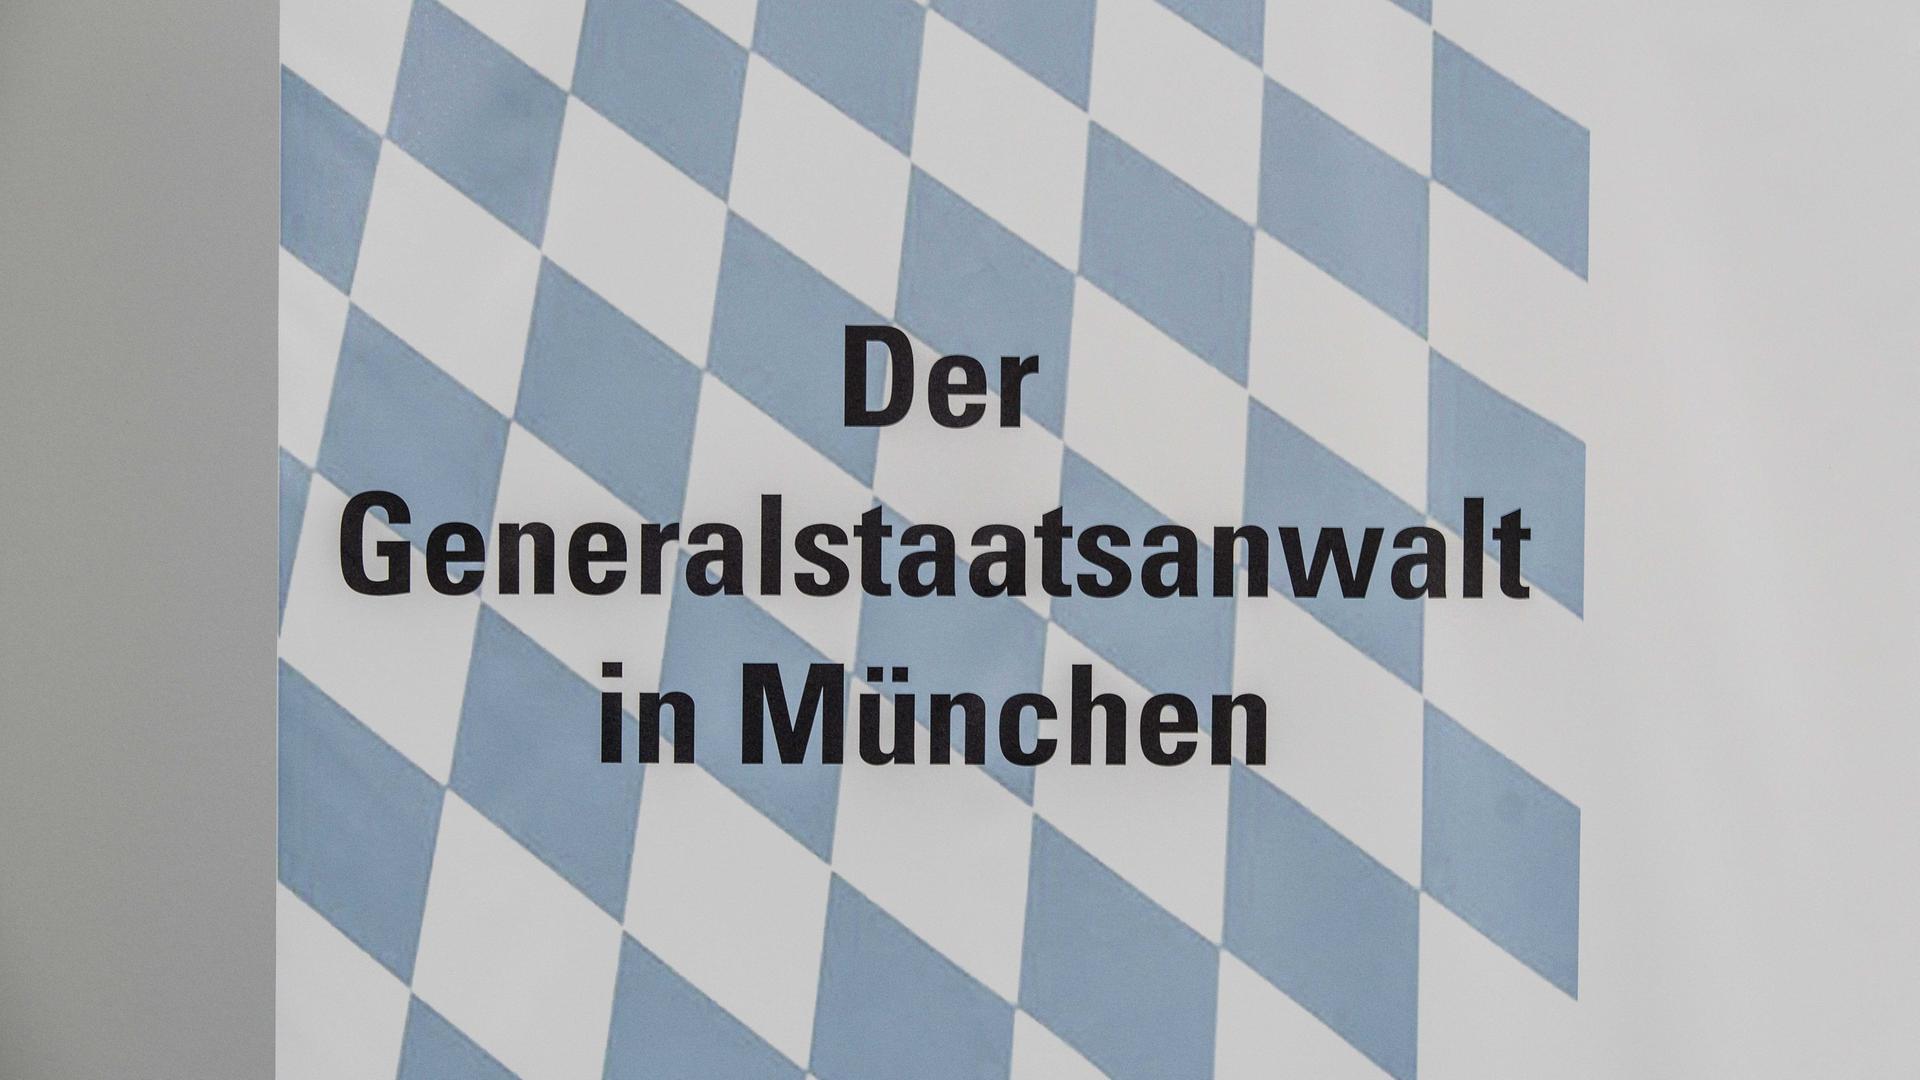 Der Schriftzug "Der Generalstaatsanwalt in München" prangt vor bayerischem blau-weißen Karomuster.